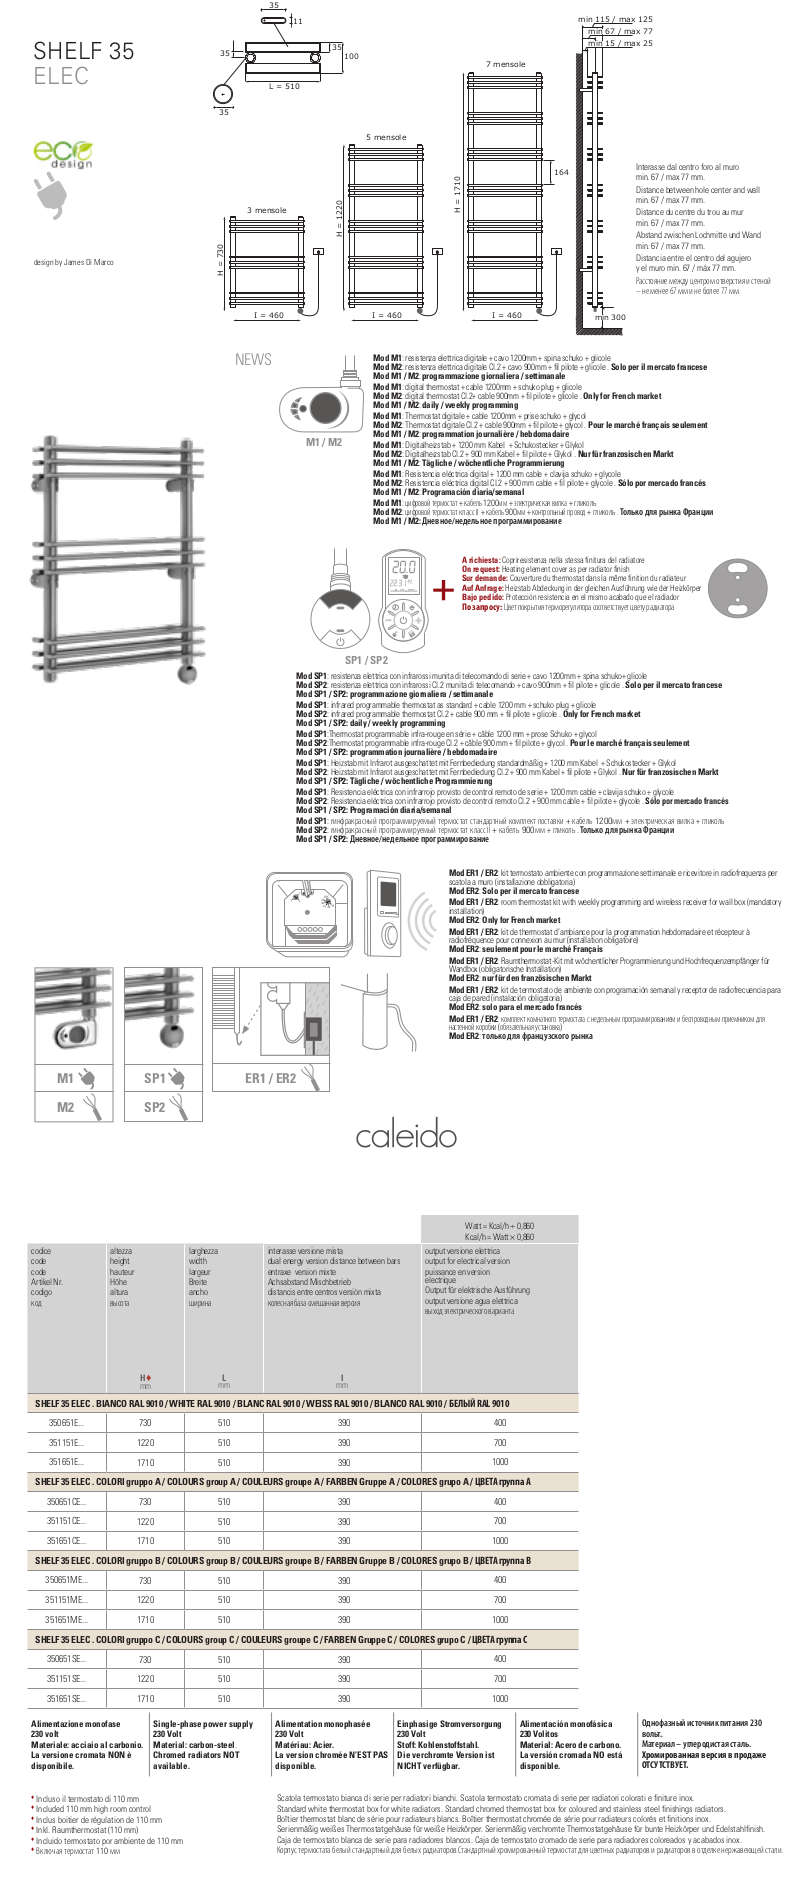 technical sheet electric towel warmer shelf 35 caleido